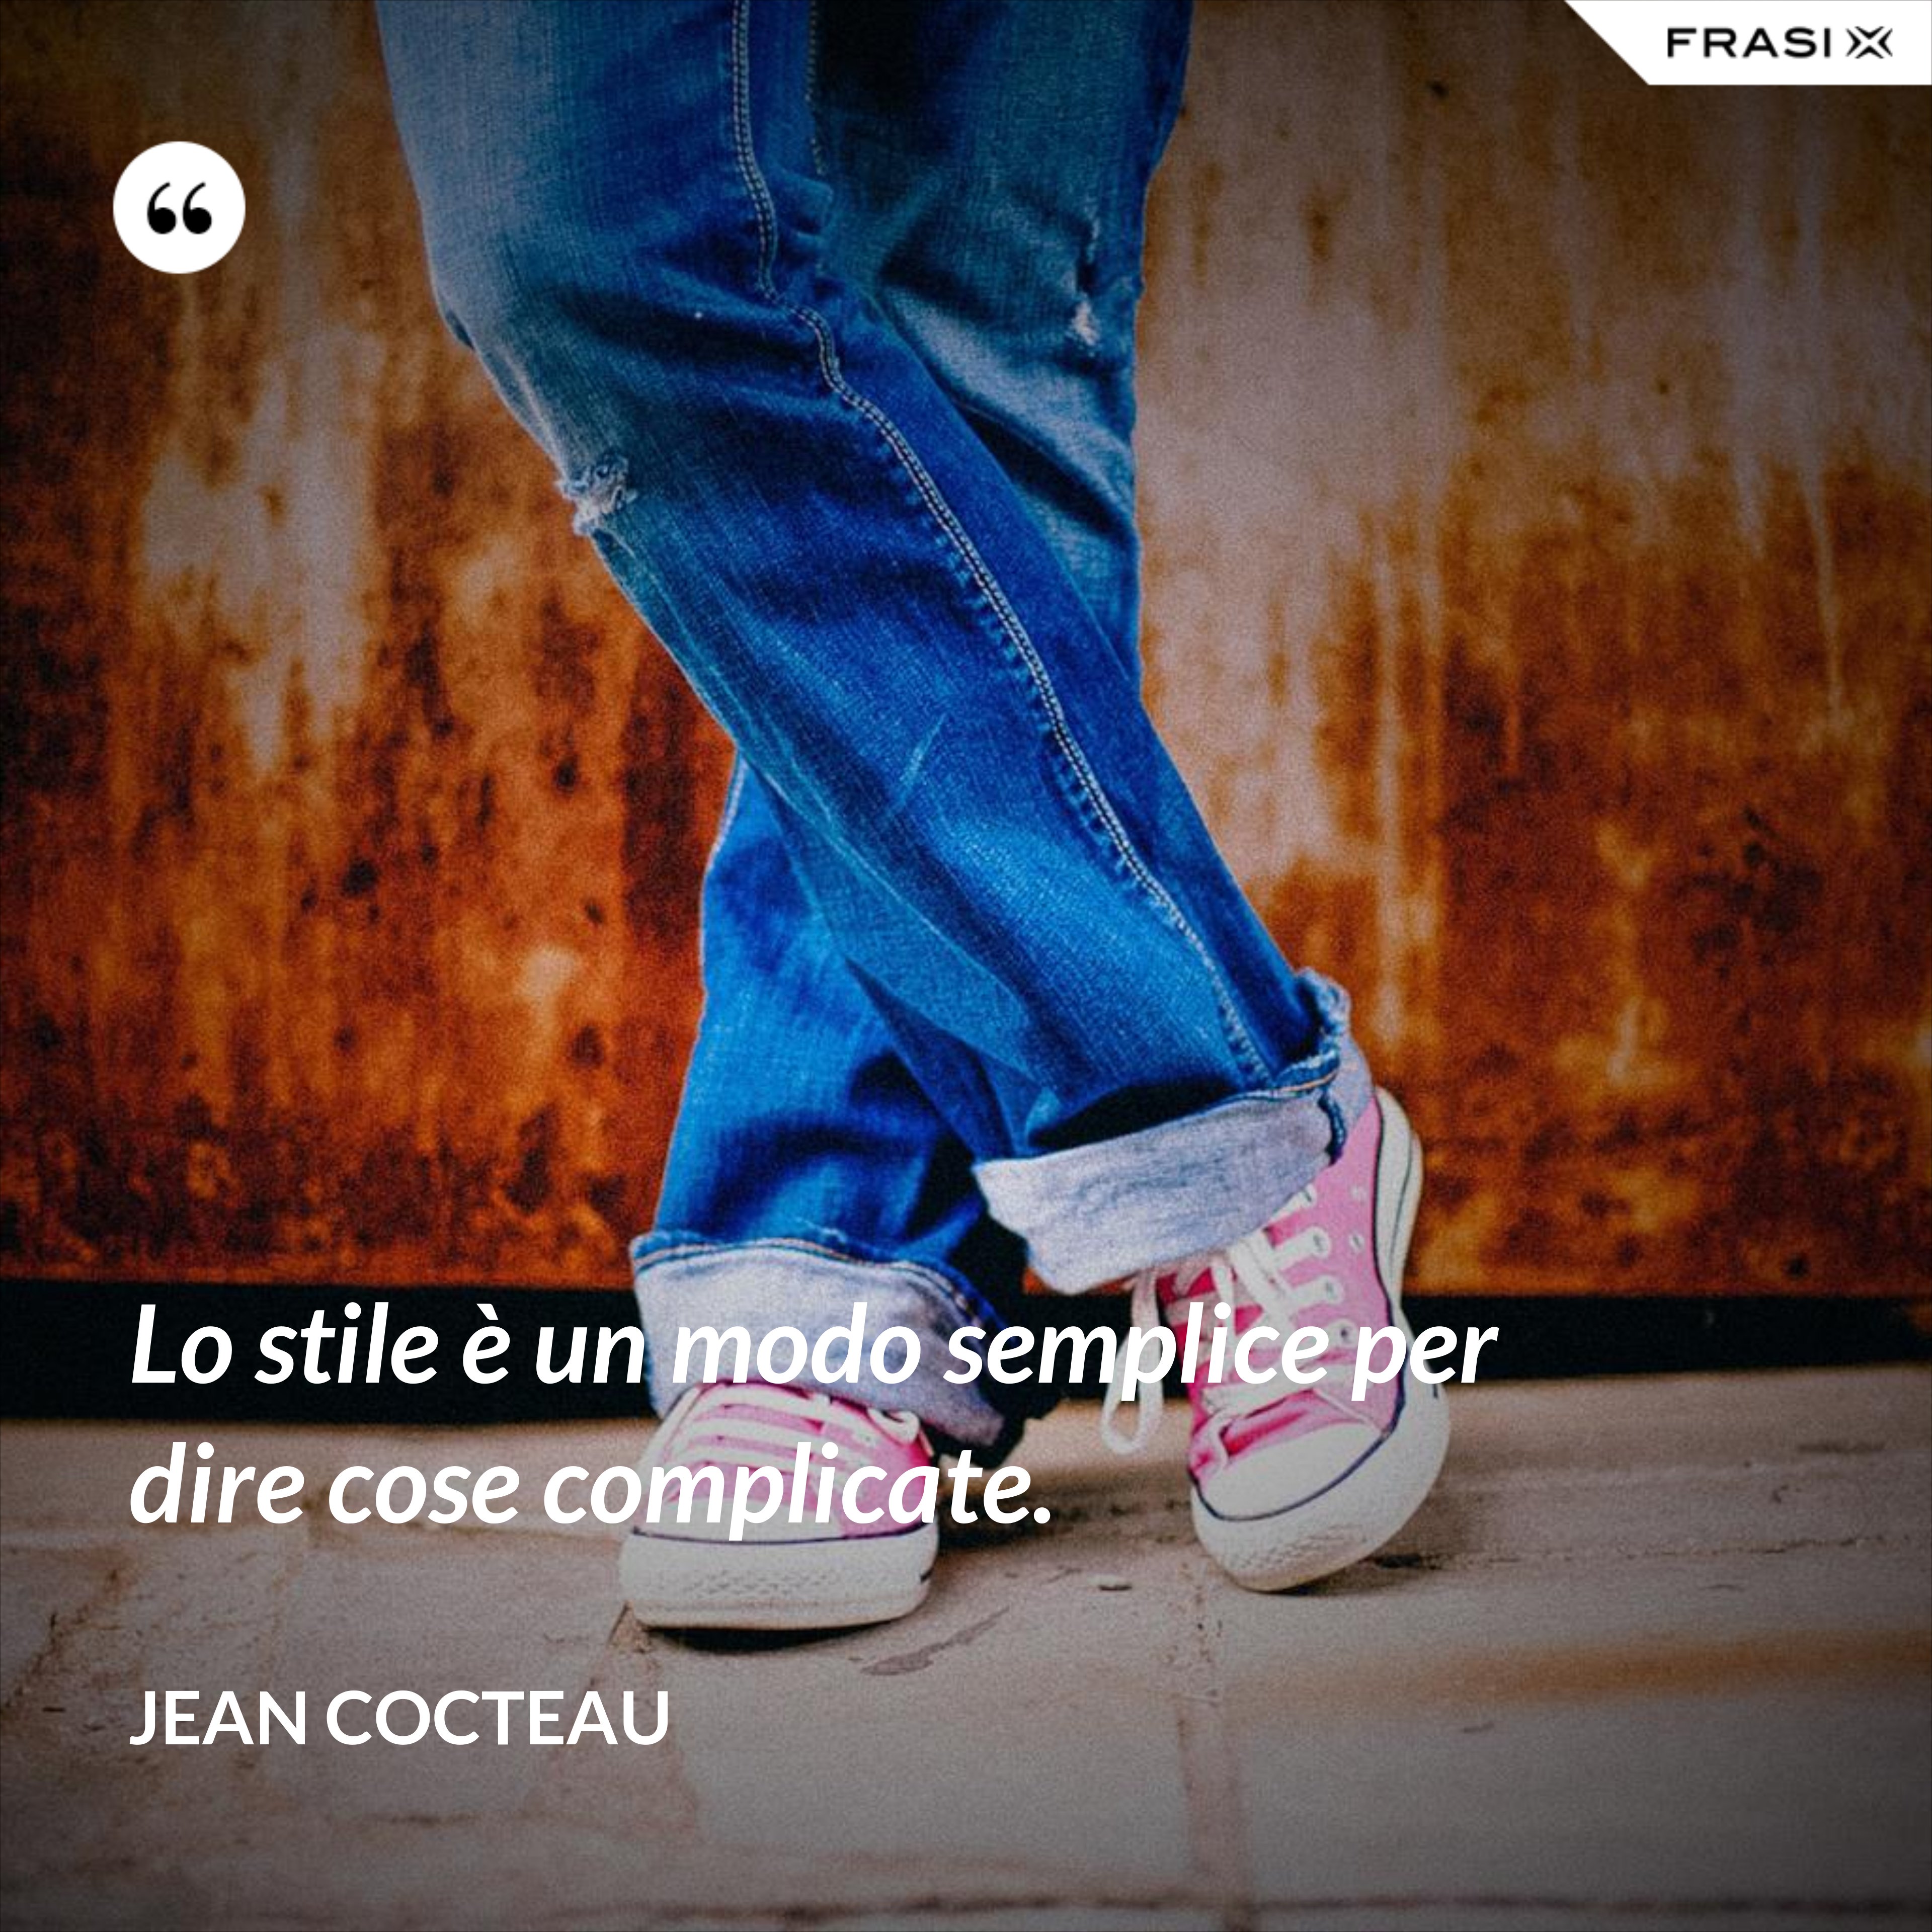 Lo stile è un modo semplice per dire cose complicate. - Jean Cocteau